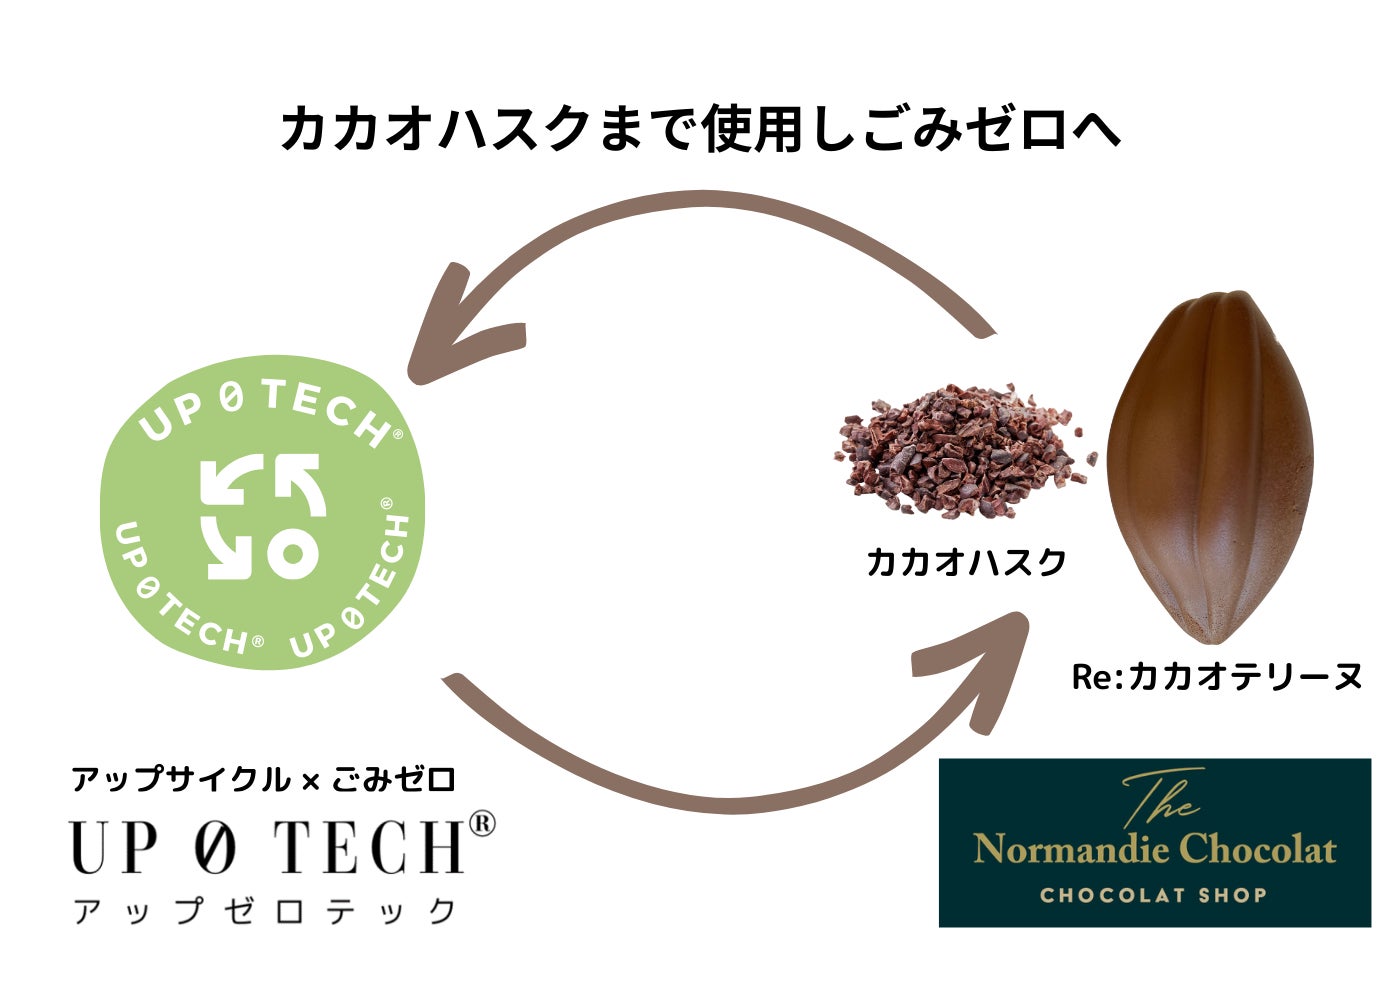 カカオハスクをアップサイクルしてチョコレート原料として使用。「Re：カカオテリーヌ」、静岡県御殿場「Normandie Chocolat」にて9月25日発売